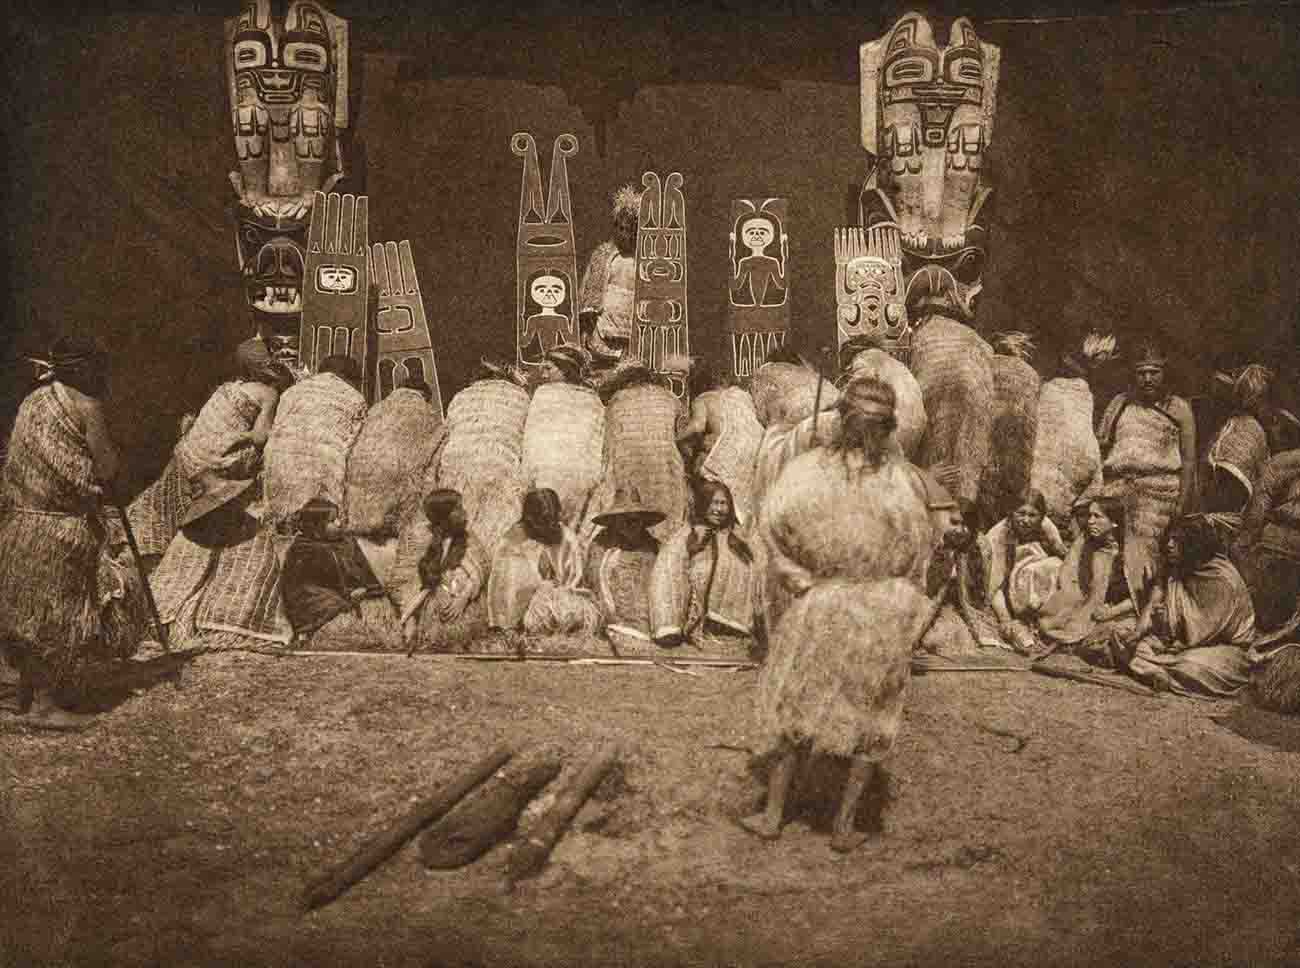 Rare Historical Photos of Kwakwakaʼwakw Ceremonial Dress and Masks, 1914-1915